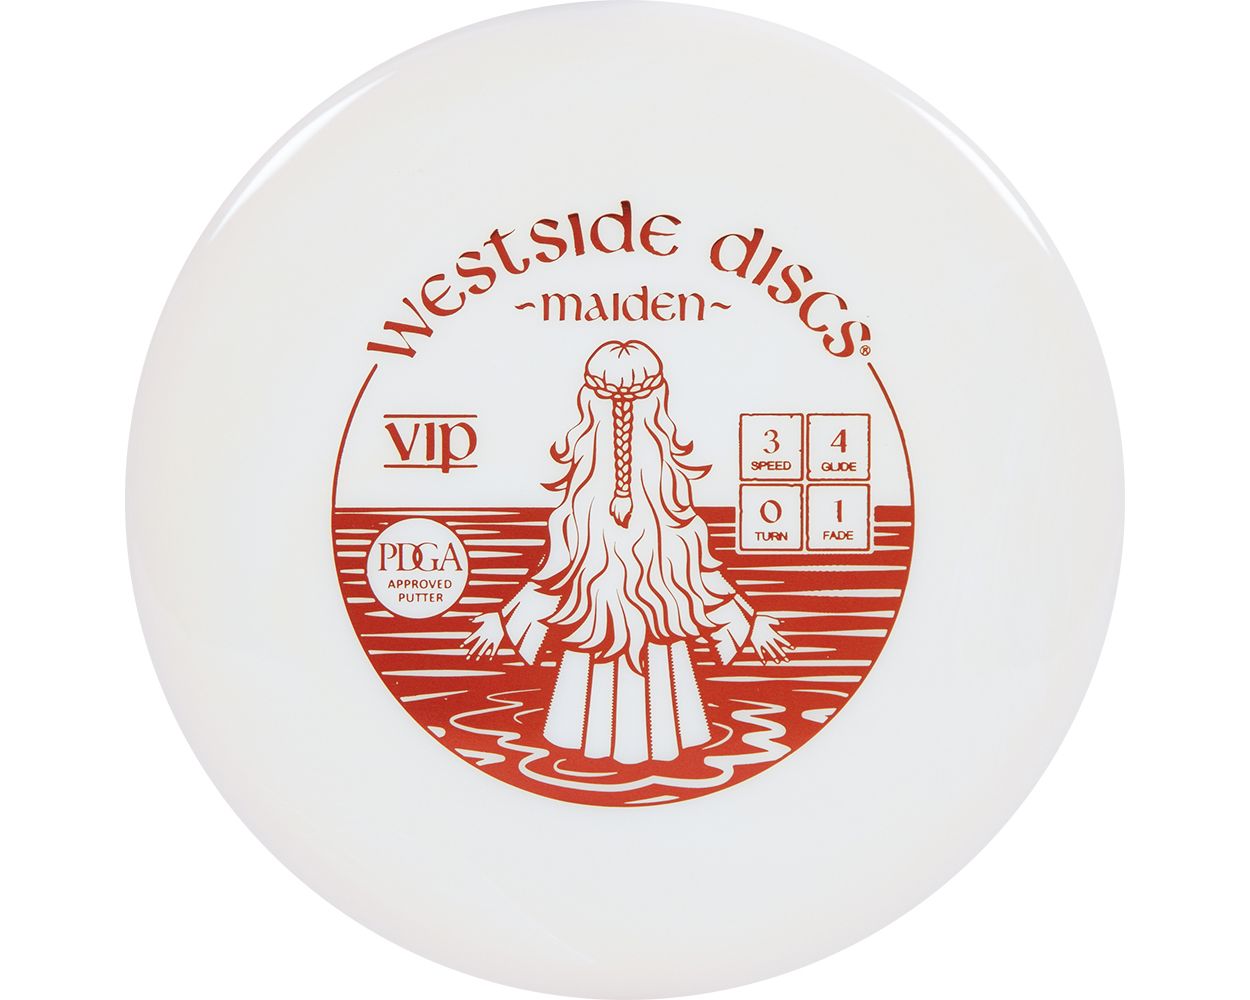 Westside Discs VIP Maiden White